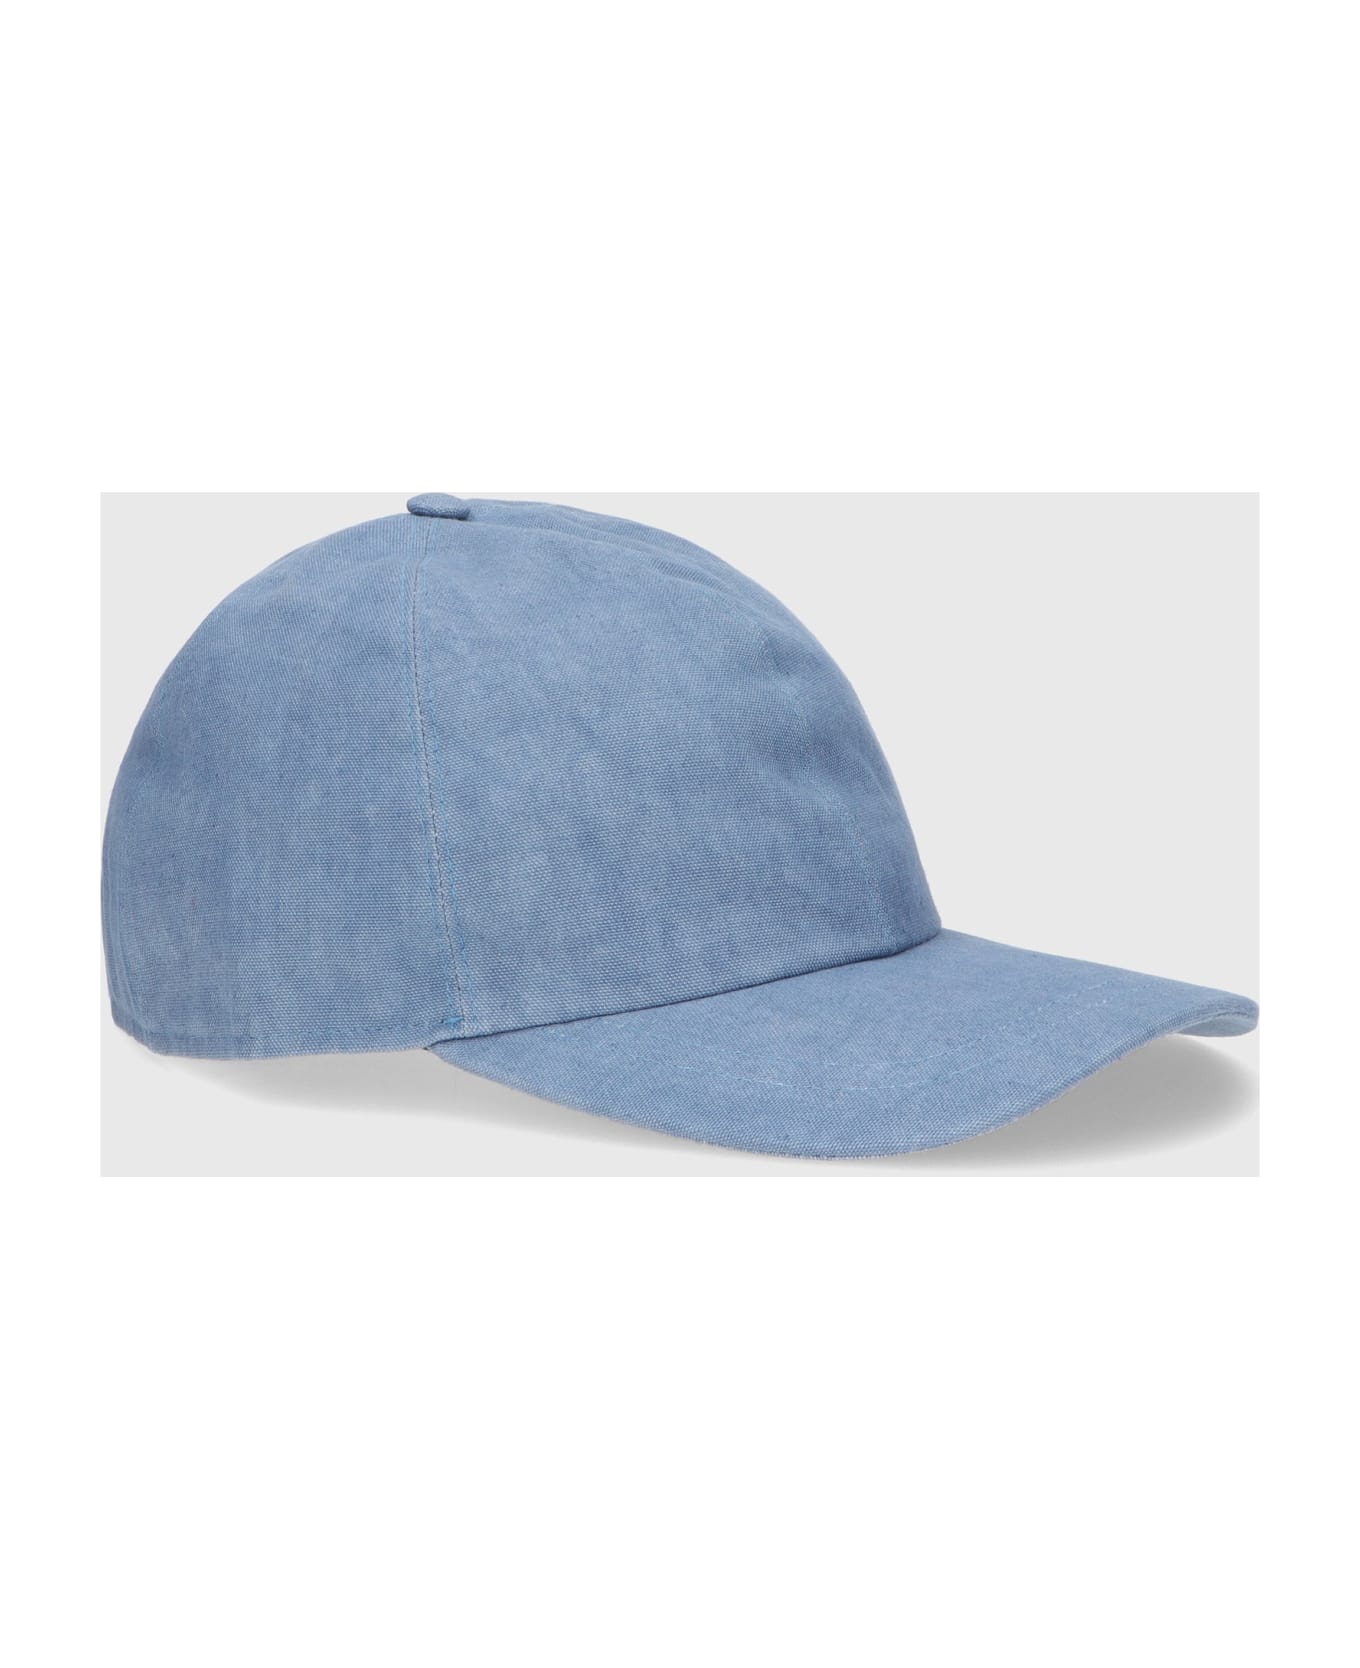 Borsalino Hiker Baseball Cap - DENIM 帽子